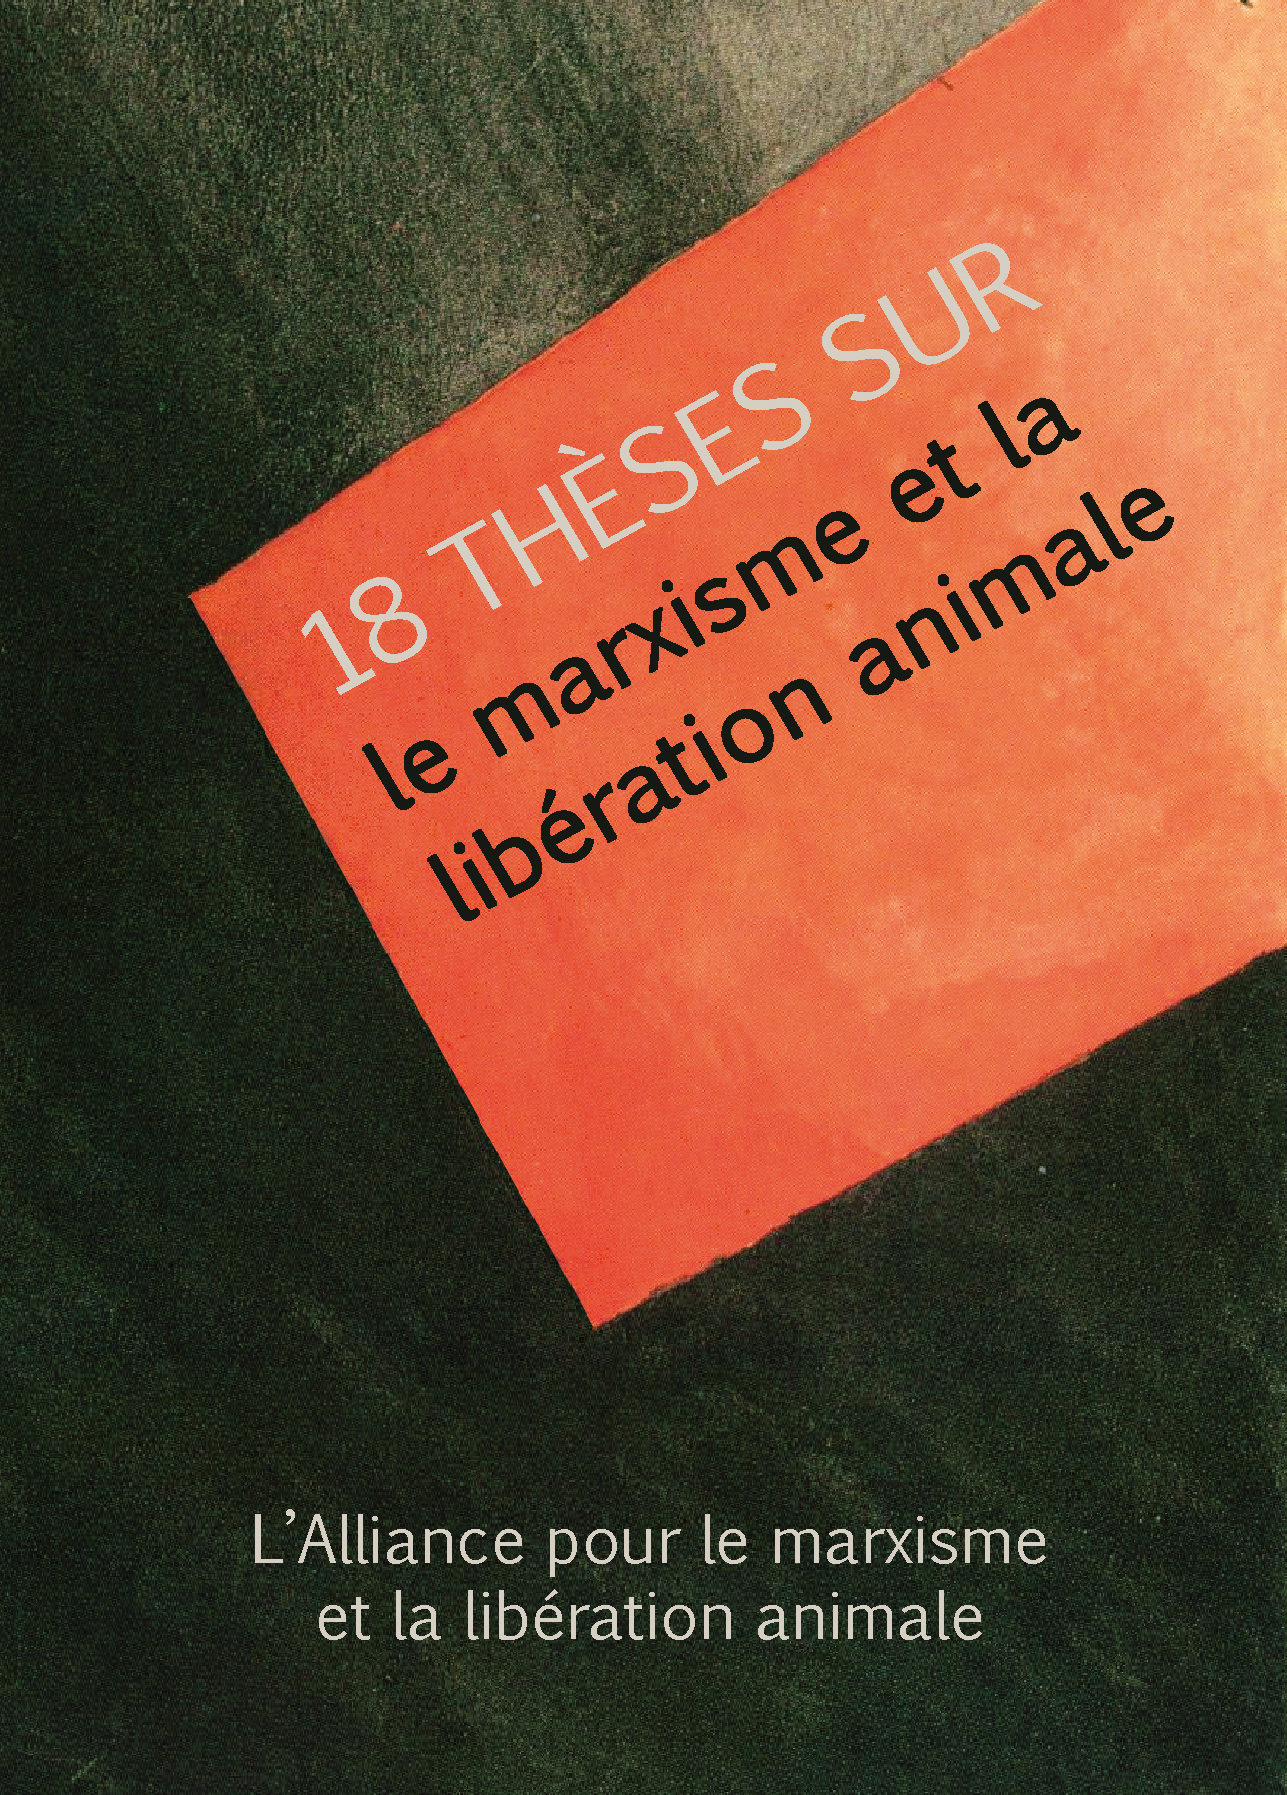 18 thèses sur le marxisme et la libération animale